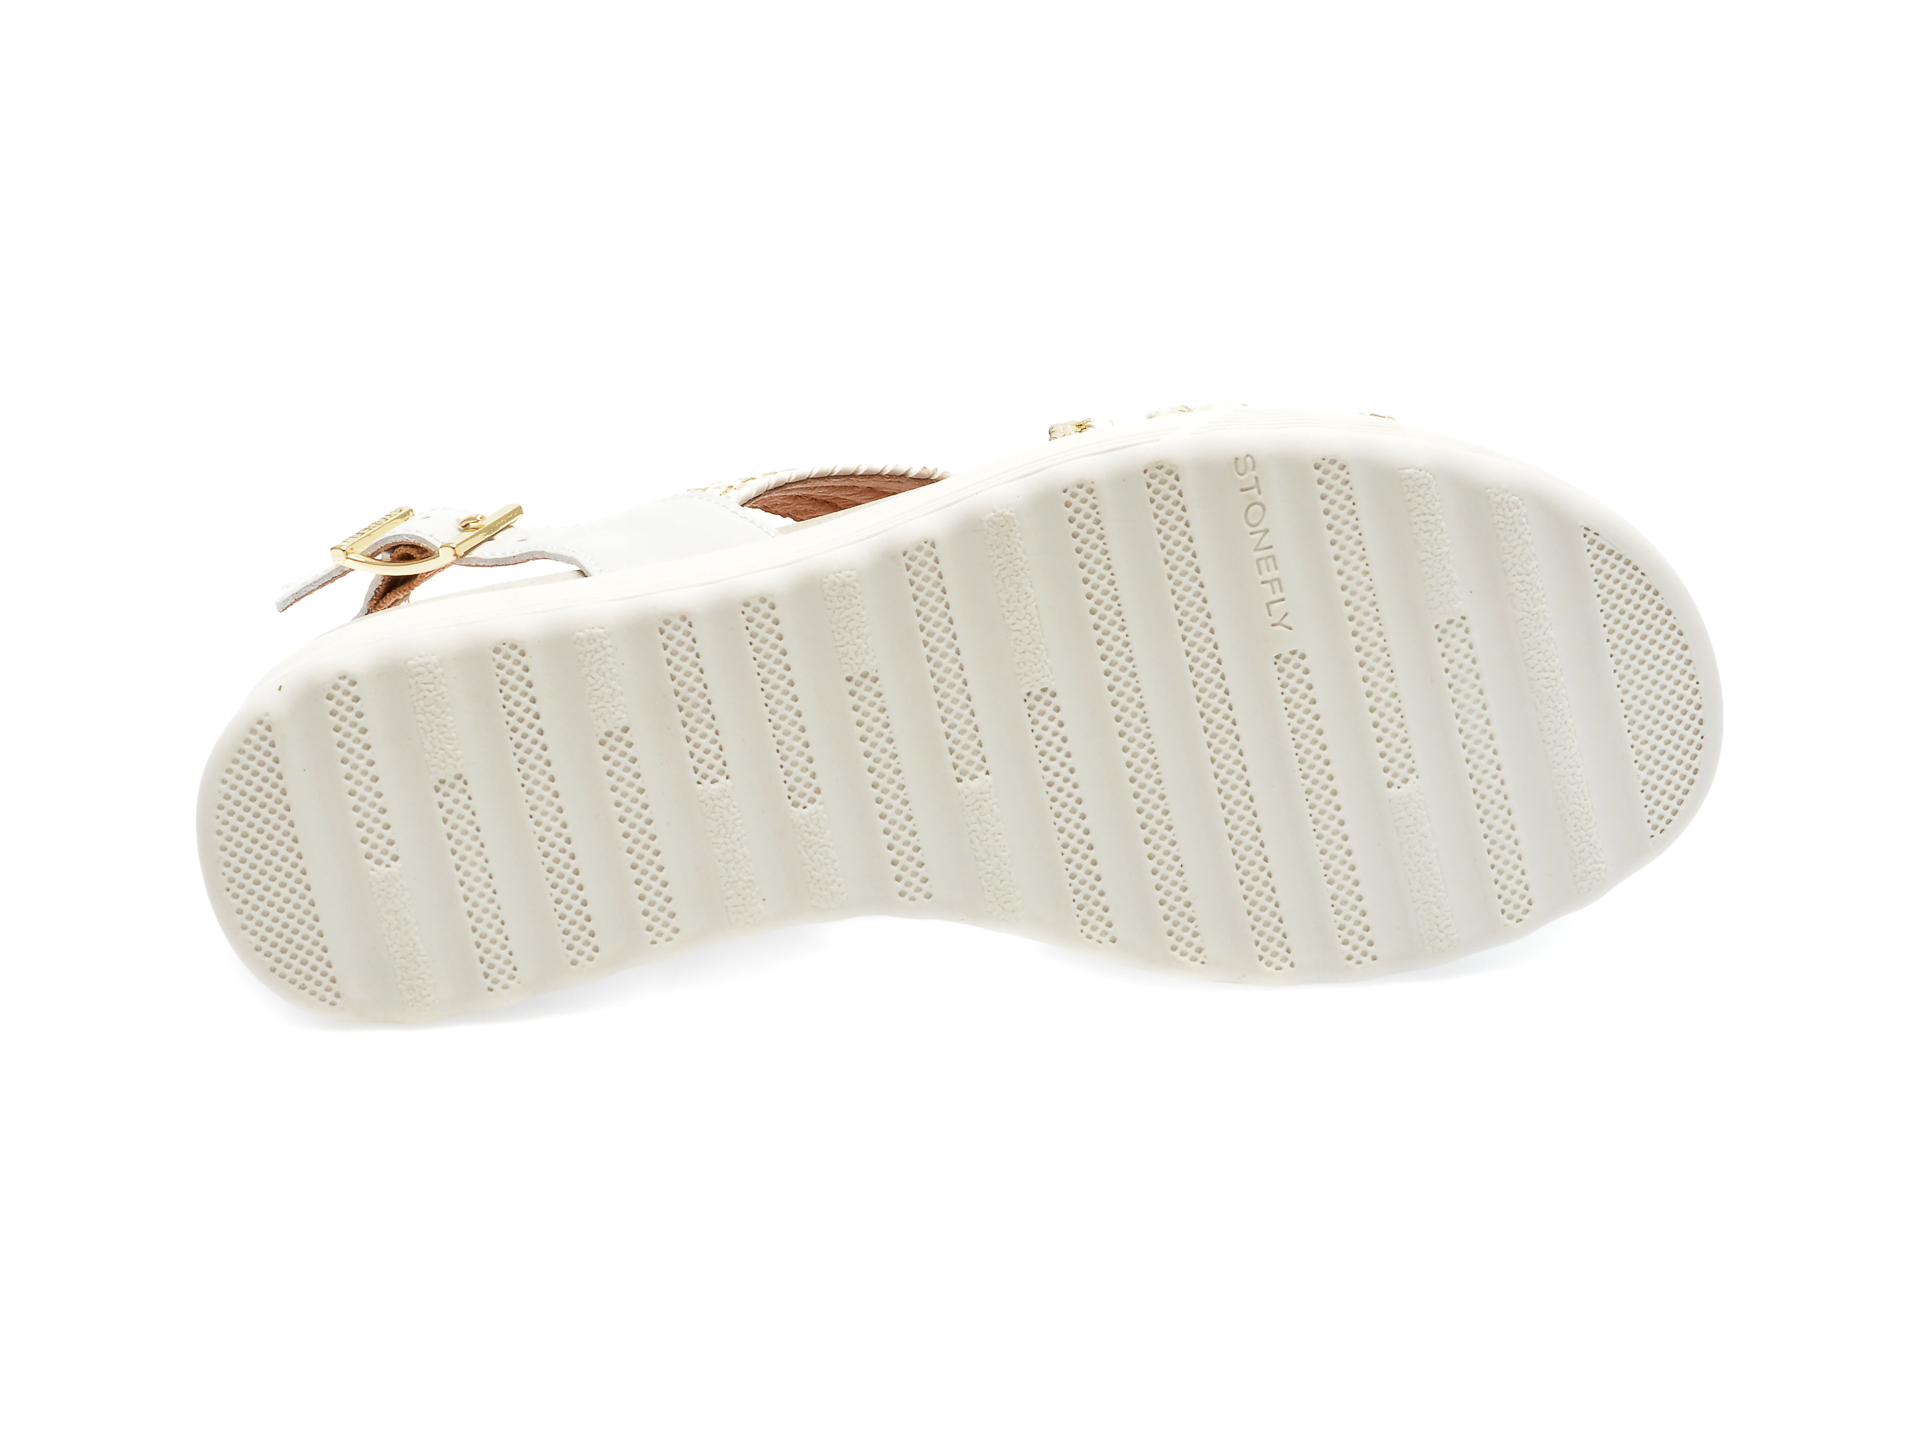 Sandale STONEFLY albe, PARKY17, din piele naturala